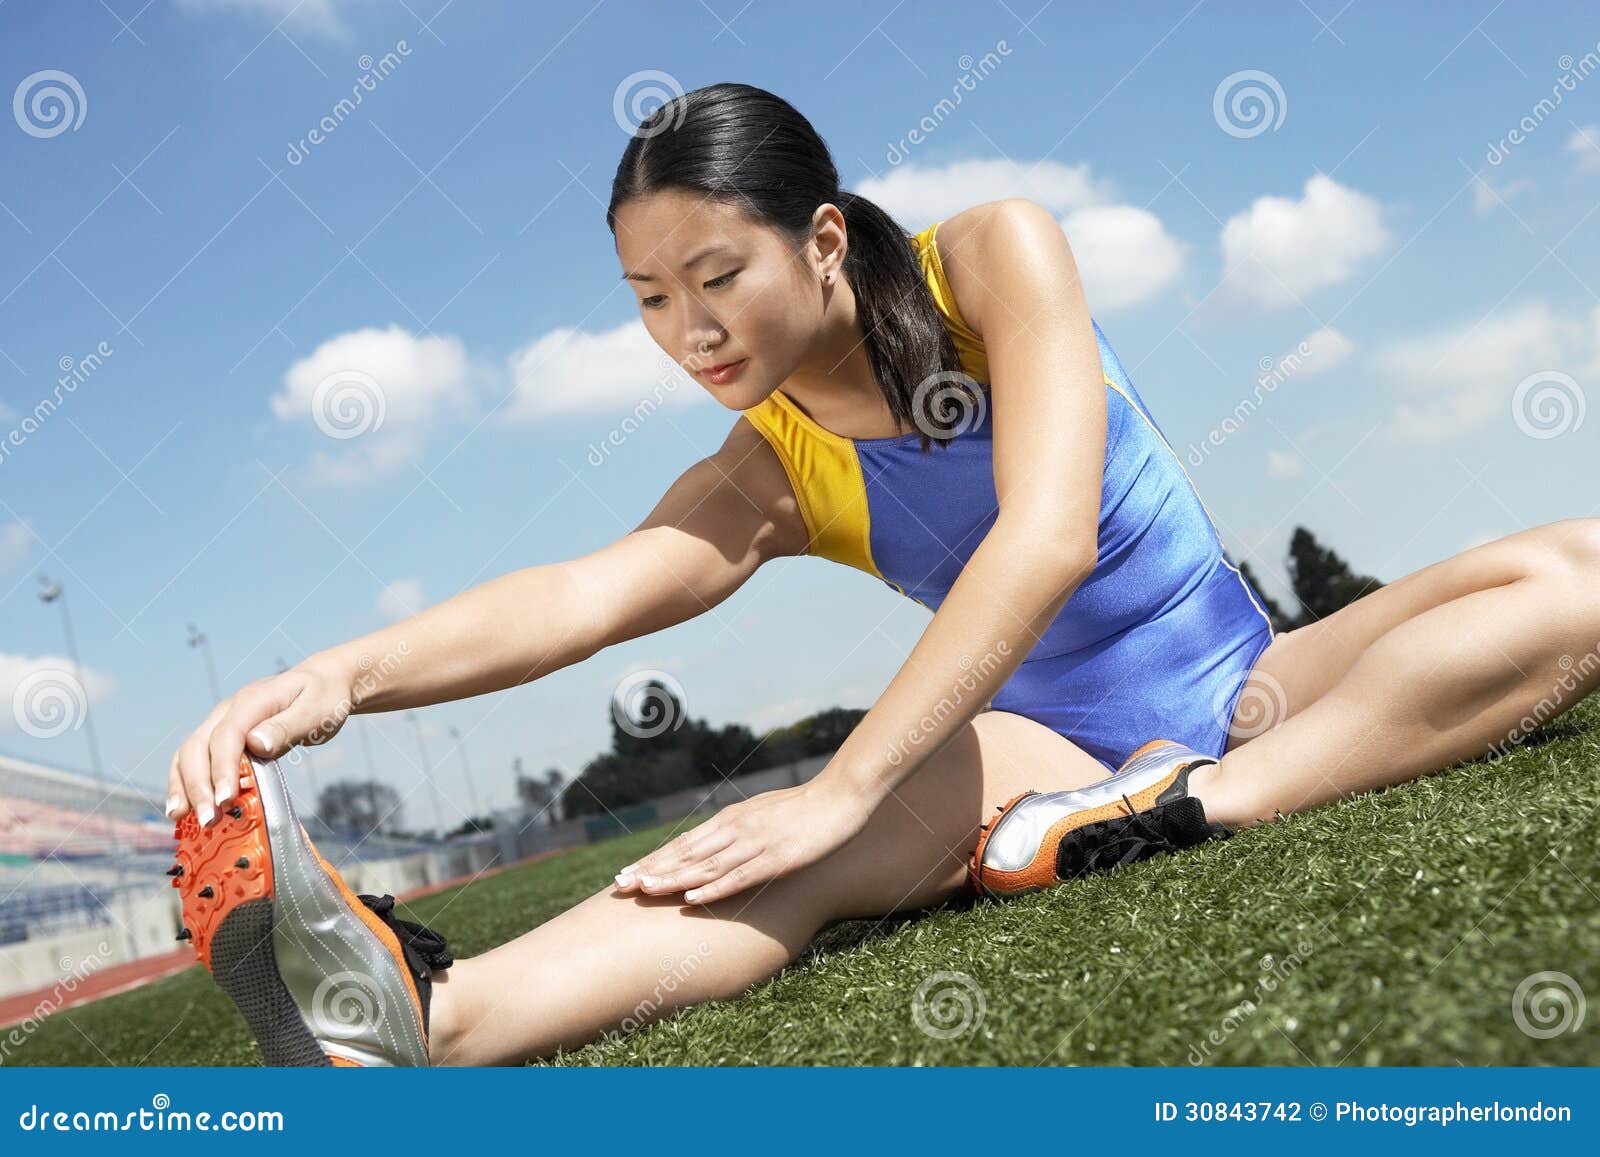 азиатки спортсменки фото фото 90